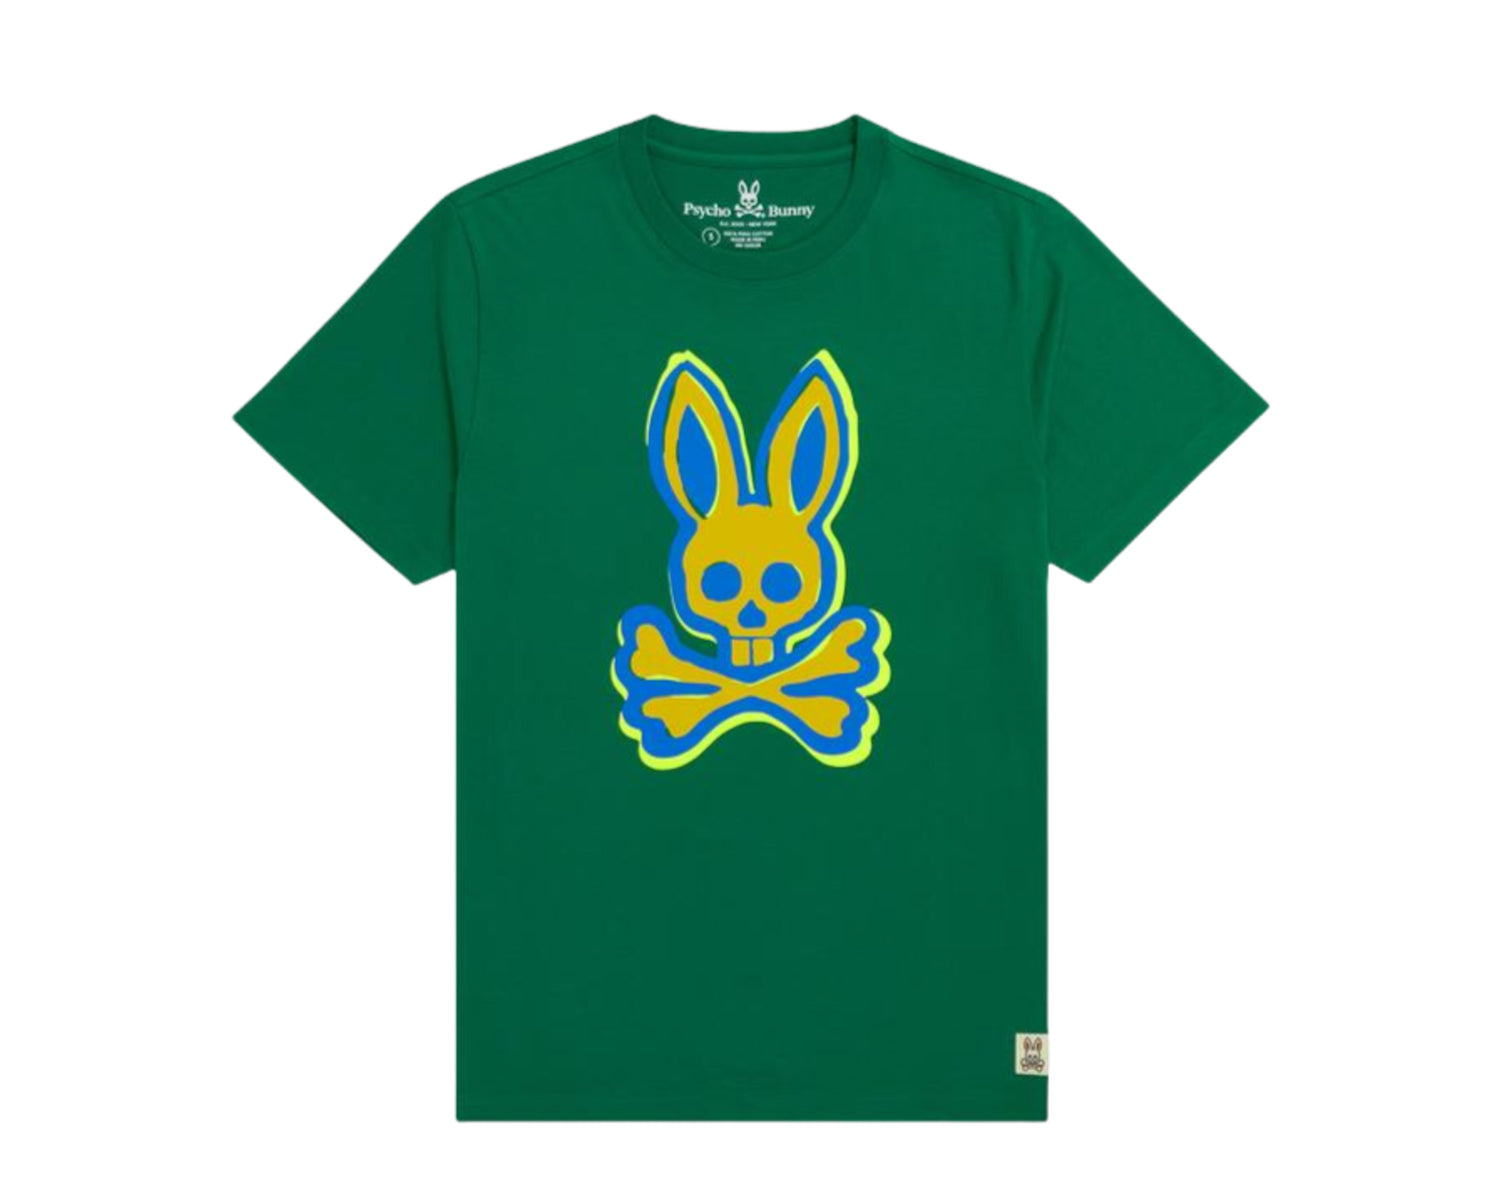 Psycho Bunny Calder Graphic Men's Tee Shirt